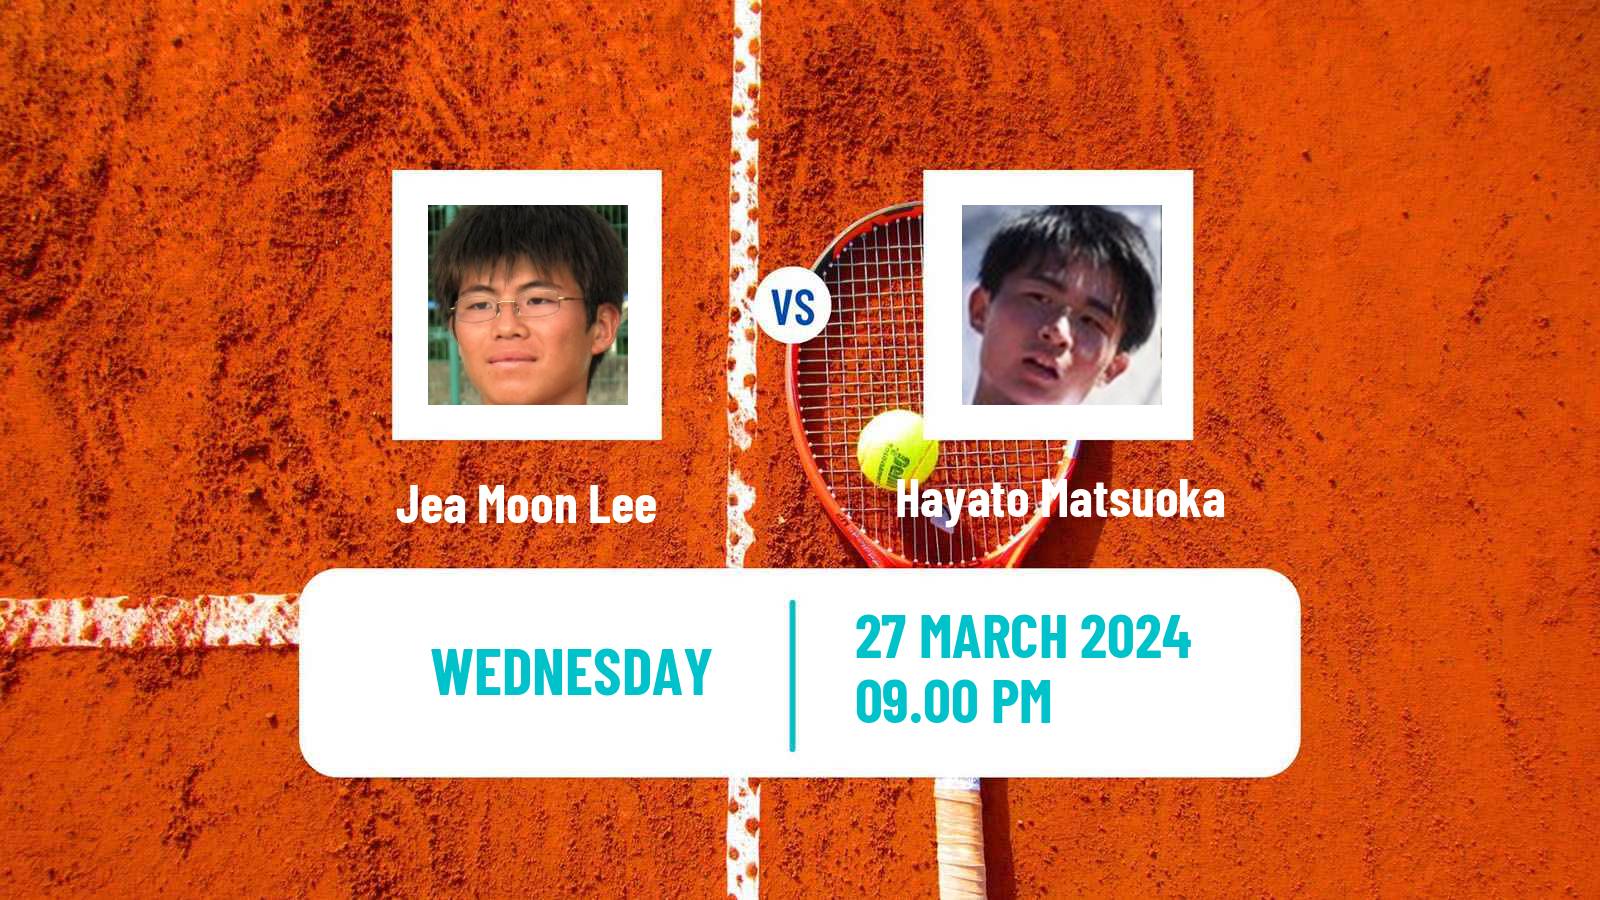 Tennis ITF M15 Tsukuba Men Jea Moon Lee - Hayato Matsuoka